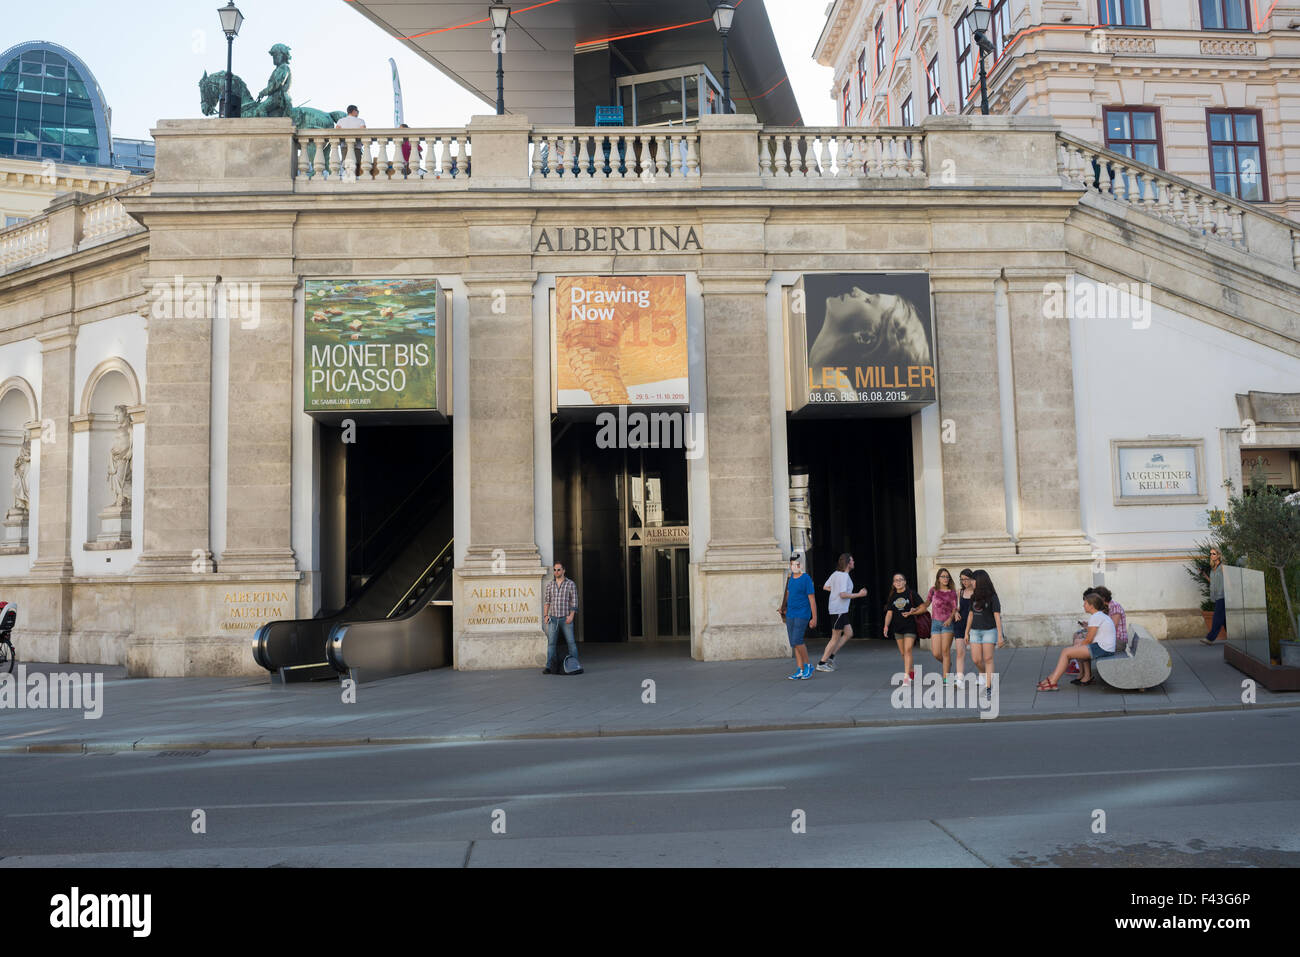 Wien, Österreich - 31. Juli 2015: Albertina Museum während der Ausstellung der Künstler Picasso und Monet am 31. Juli 2015 in Wien Stockfoto